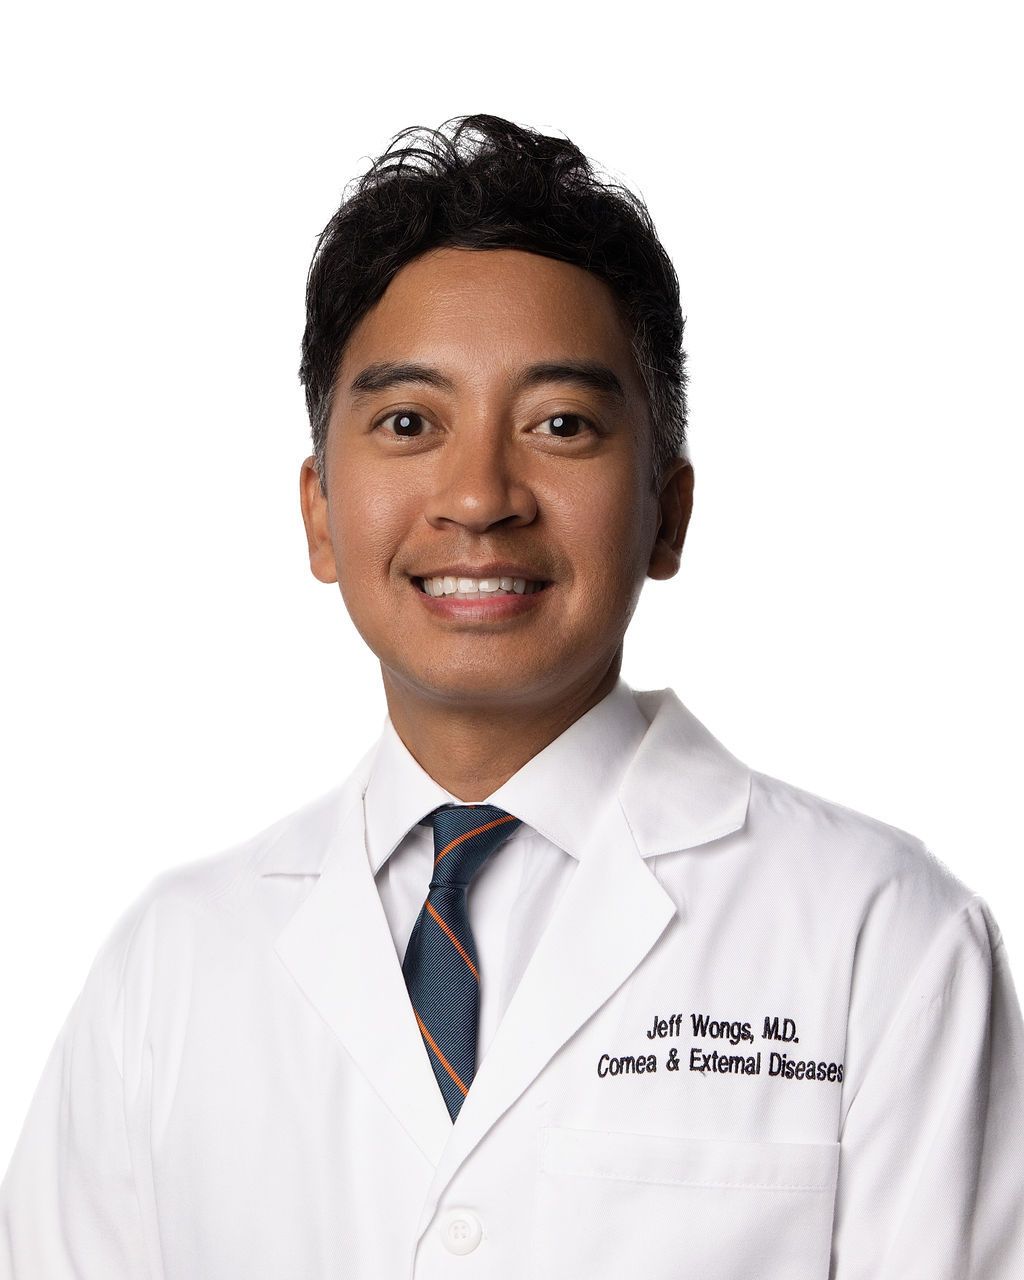 Dr. Jeff Wongs